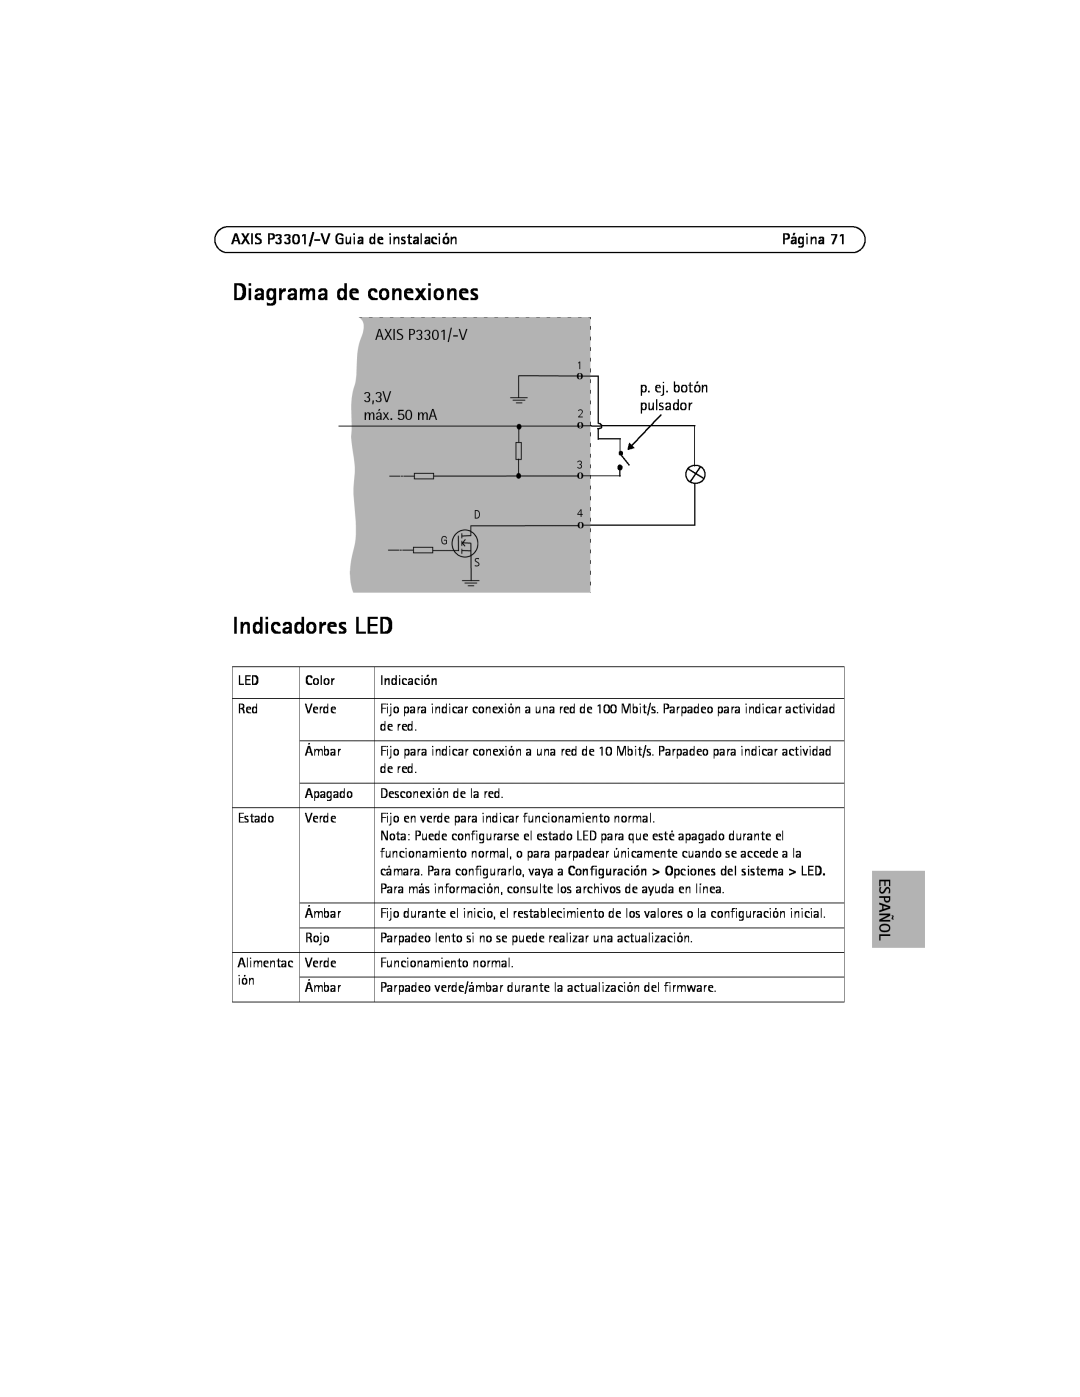 Axis Communications manual Diagrama de conexiones, Indicadores LED, AXIS P3301/-V Guia de instalación, Color, Indicación 